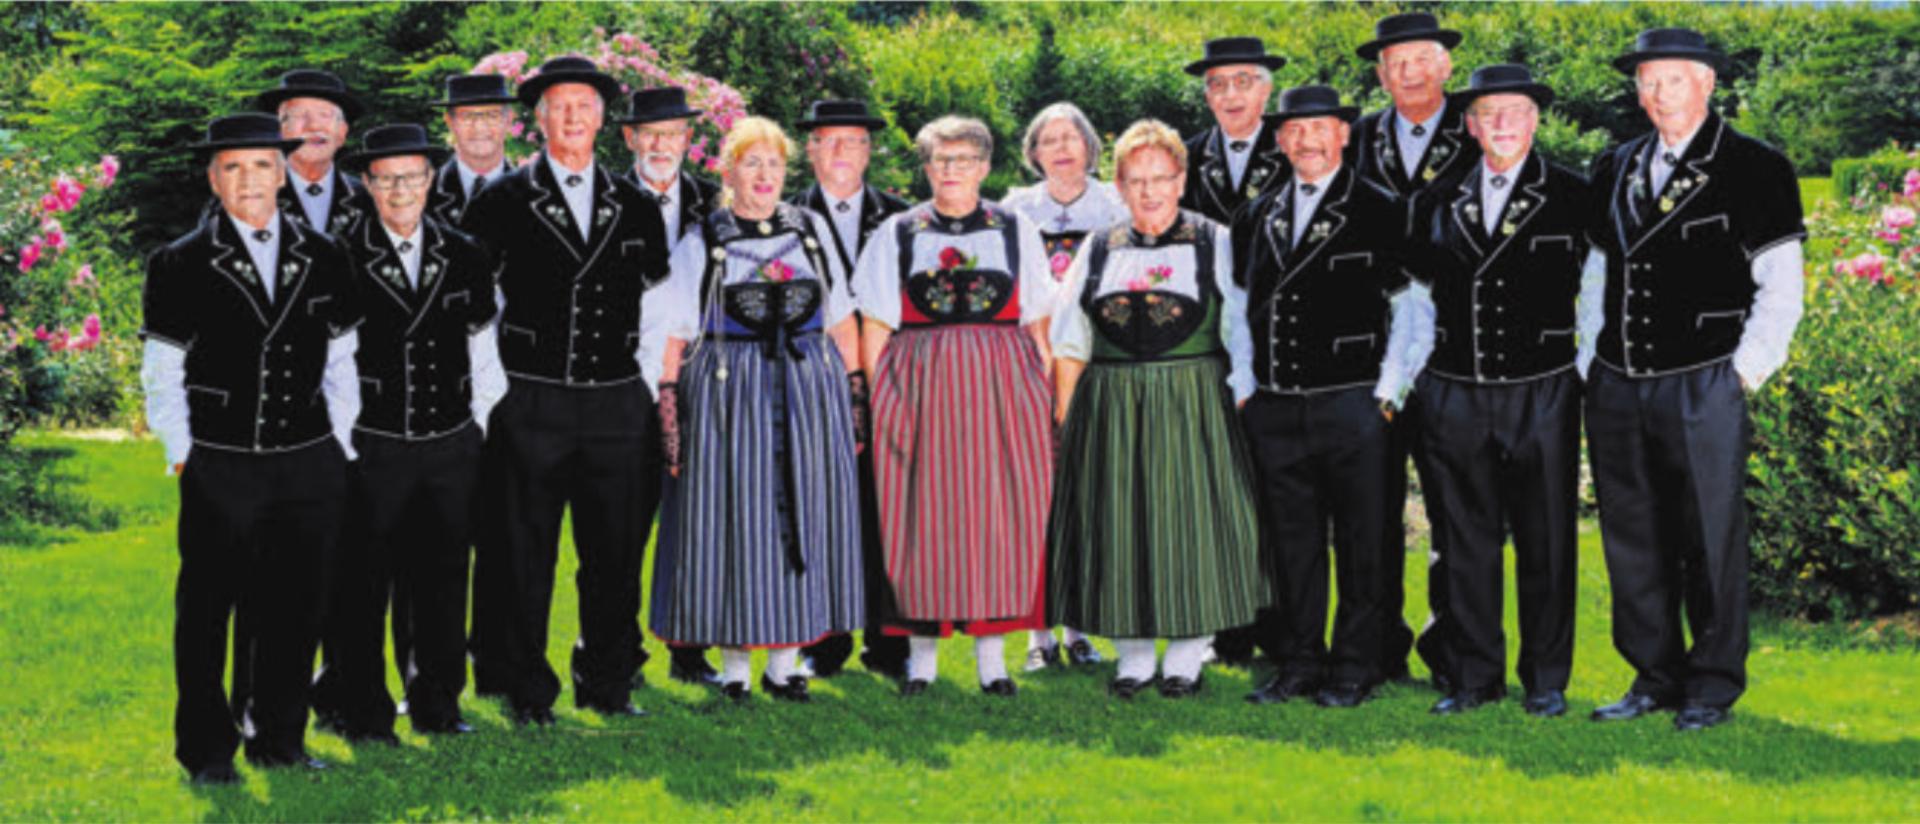 Die Jodlerinnen und Jodler aus Dottikon haben sich im «Zäuerle» geübt. Der «Appenzeller-Jodel» wurde anlässlich des Vereinsausflugs ausprobiert. Bild: zg